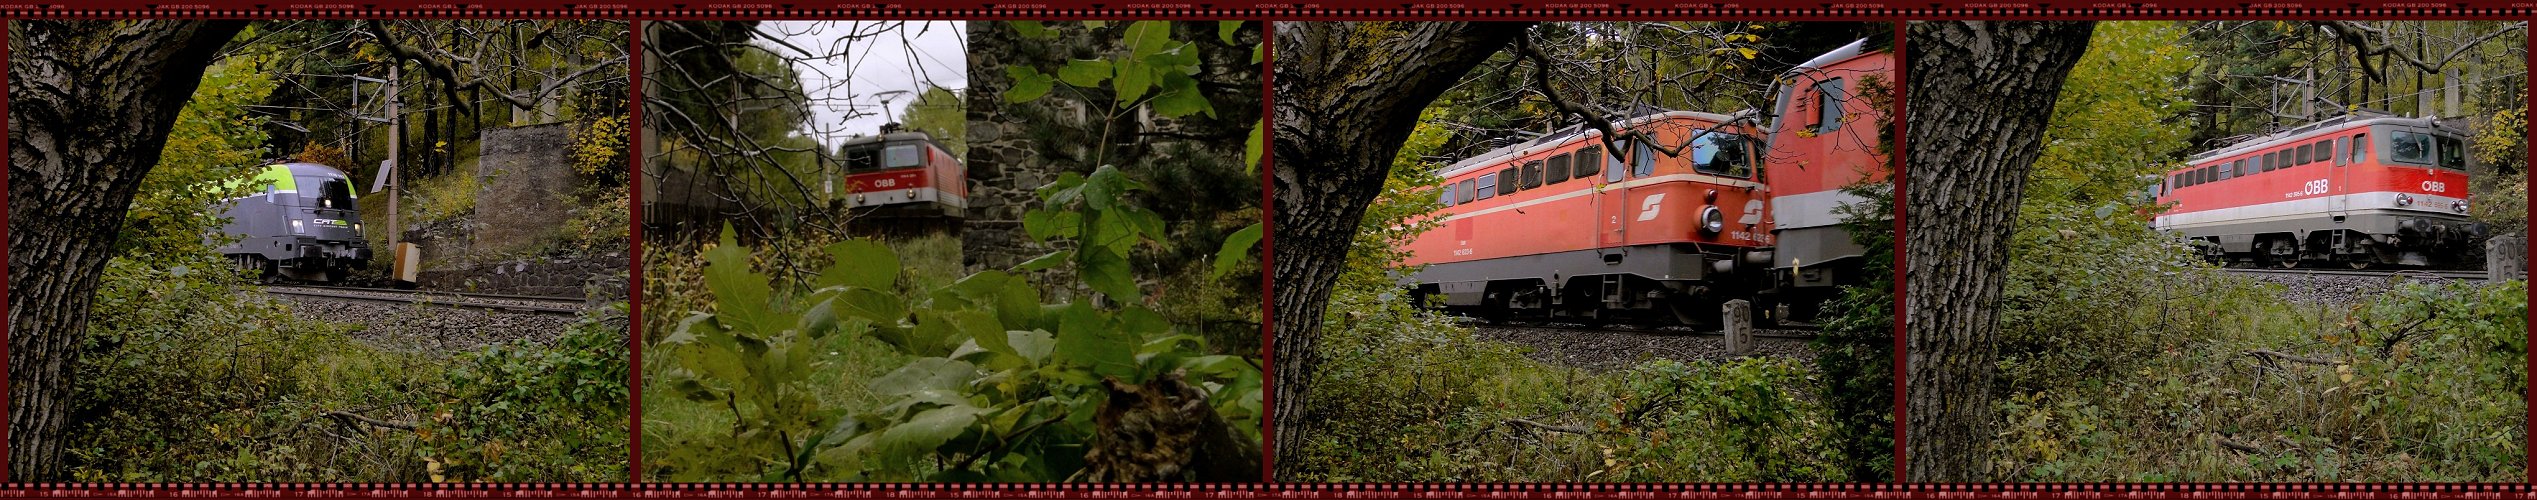 Südbahn-Exkursion 2013 - CK auf der Suche ...